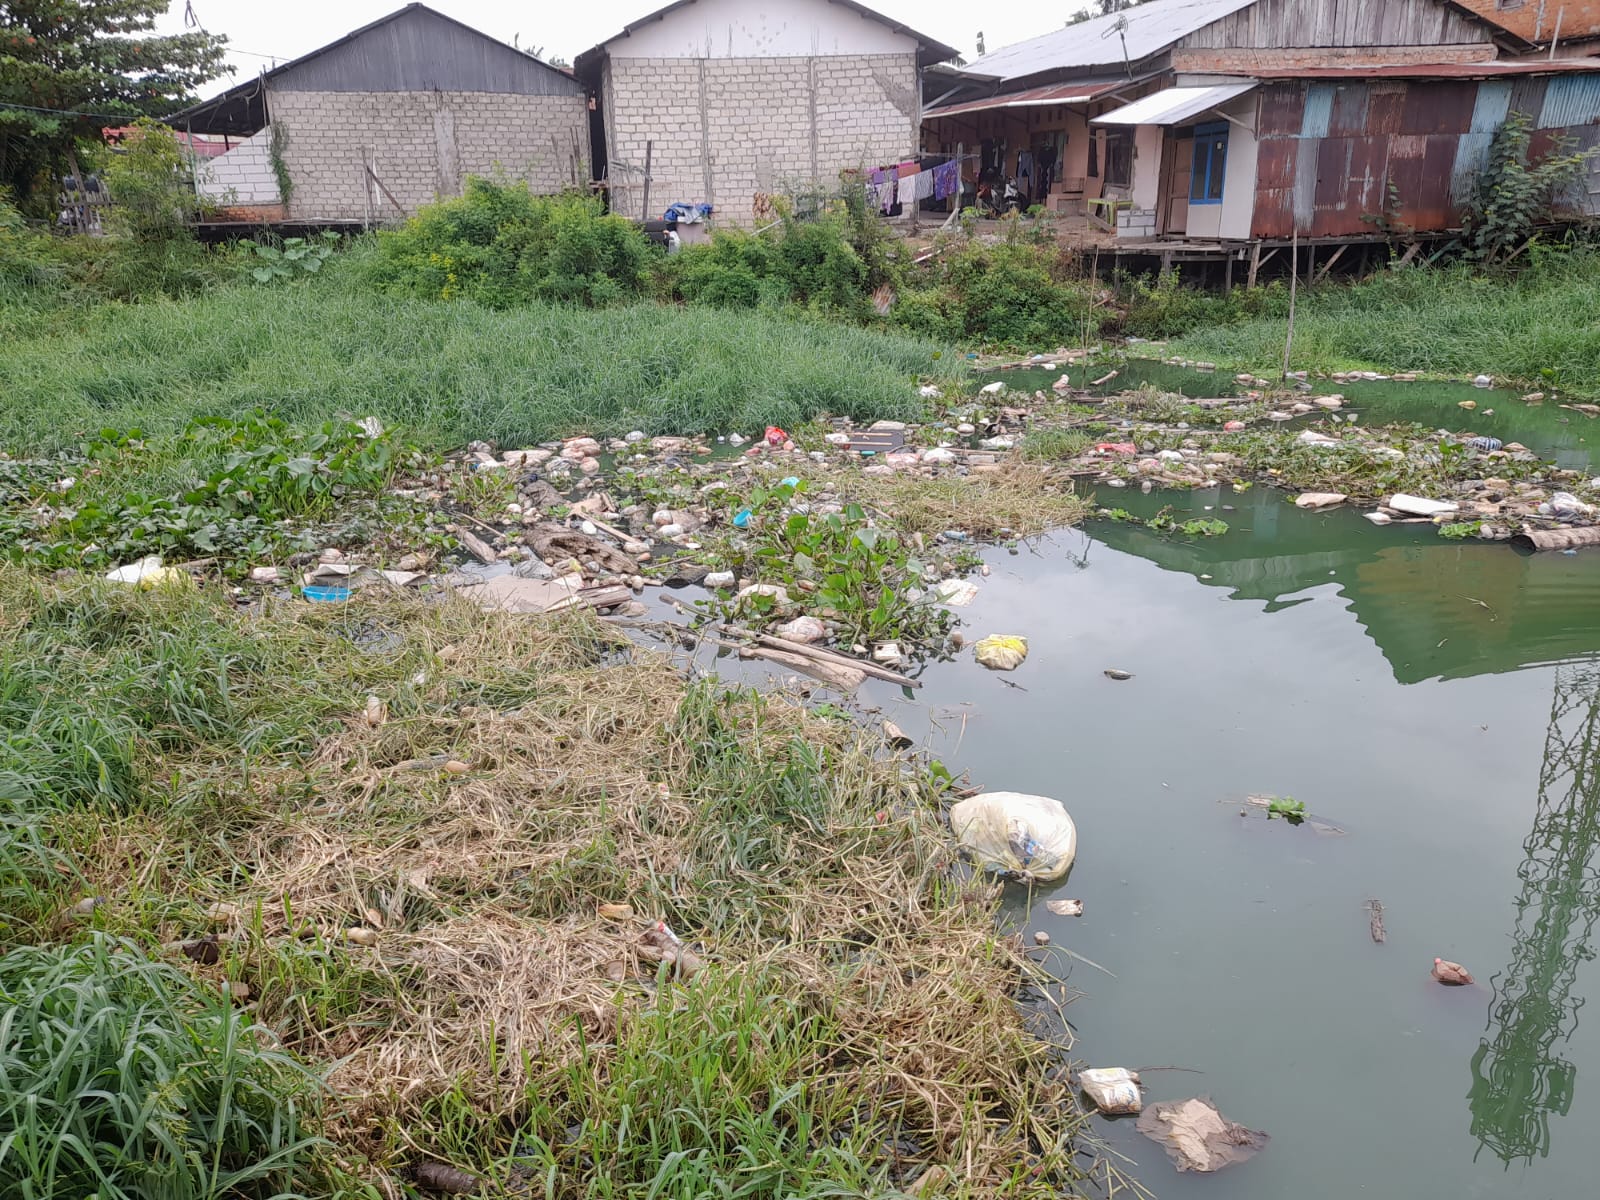 Kondisi Anak Sungai di Jalan PM Noor Samarinda: Sampah Menggenang, Sedimentasi Tinggi 